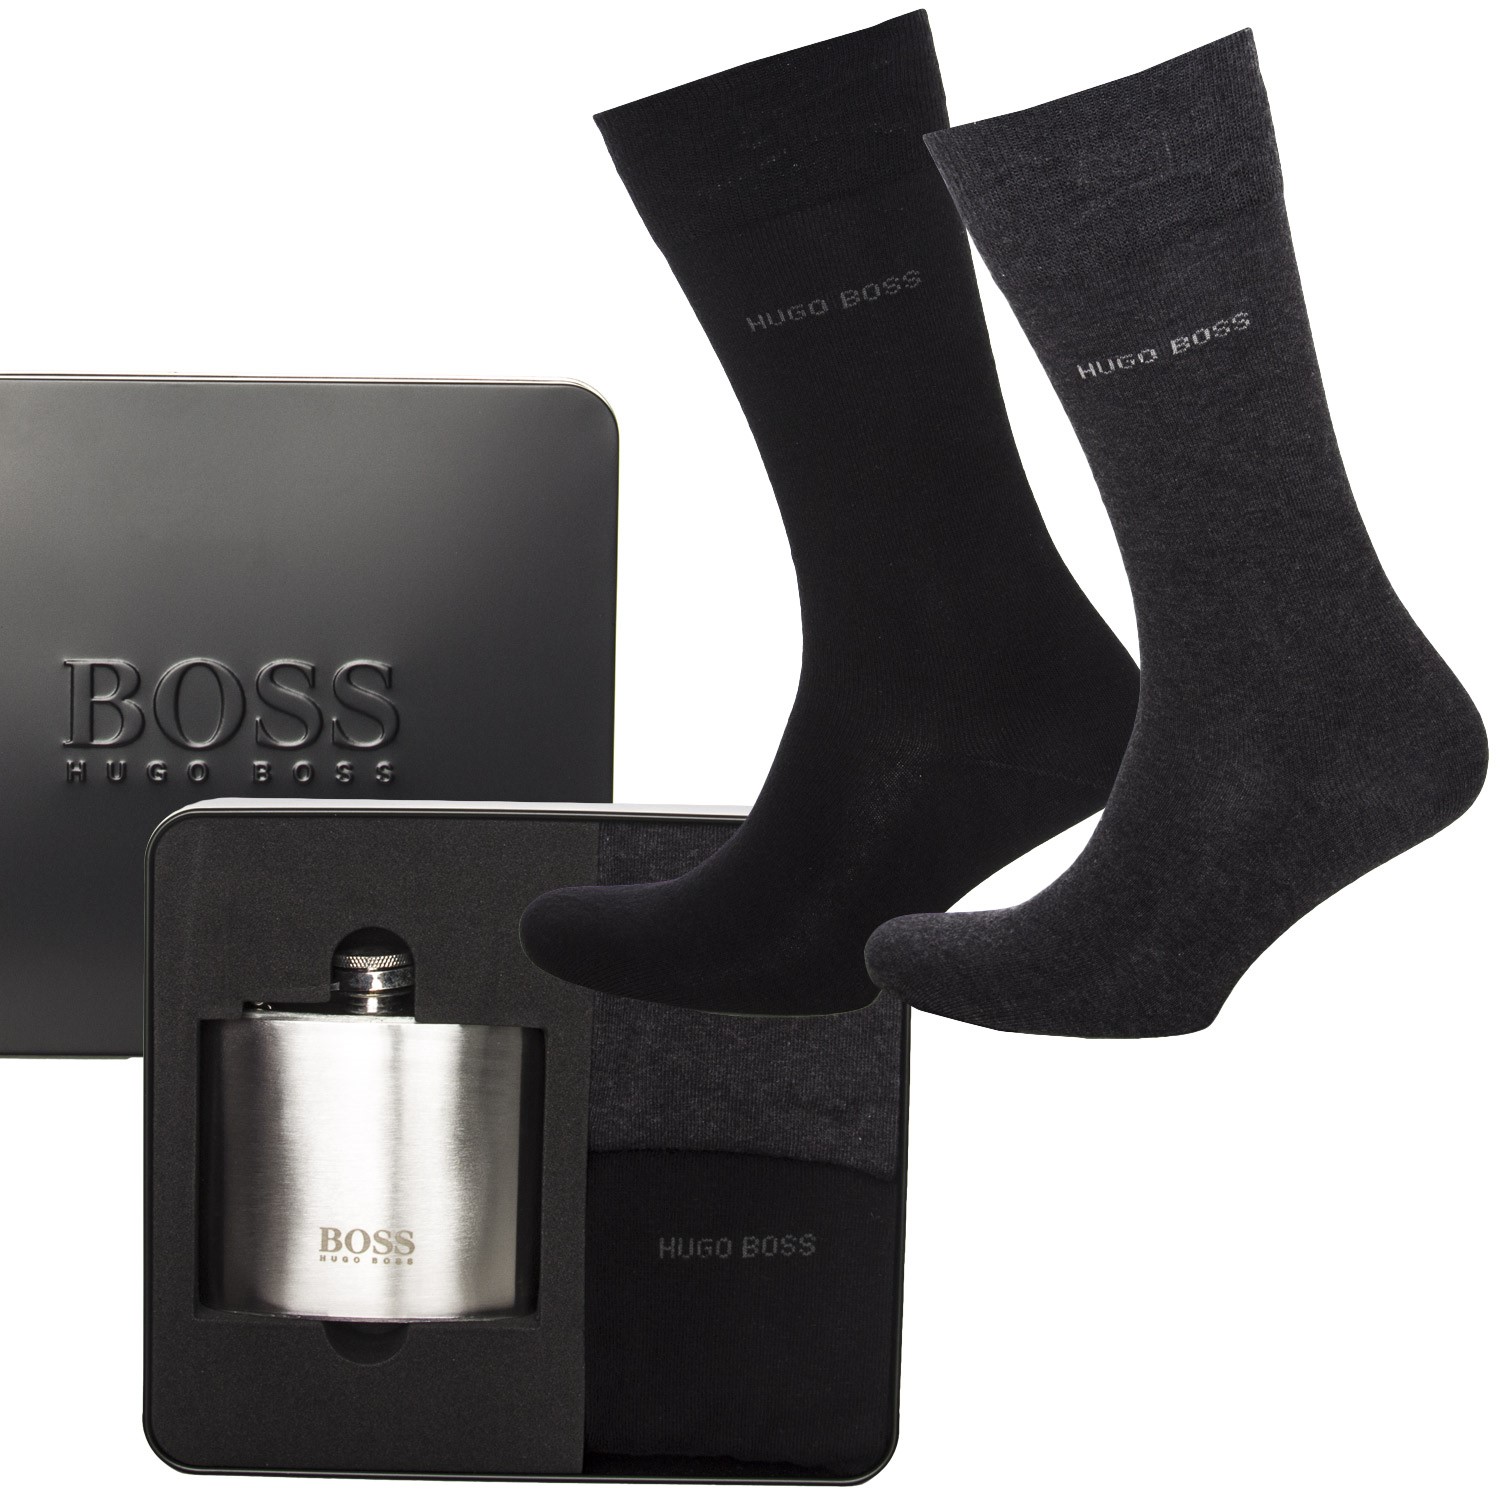 BOSS RS Sock and Bottle Gift Set